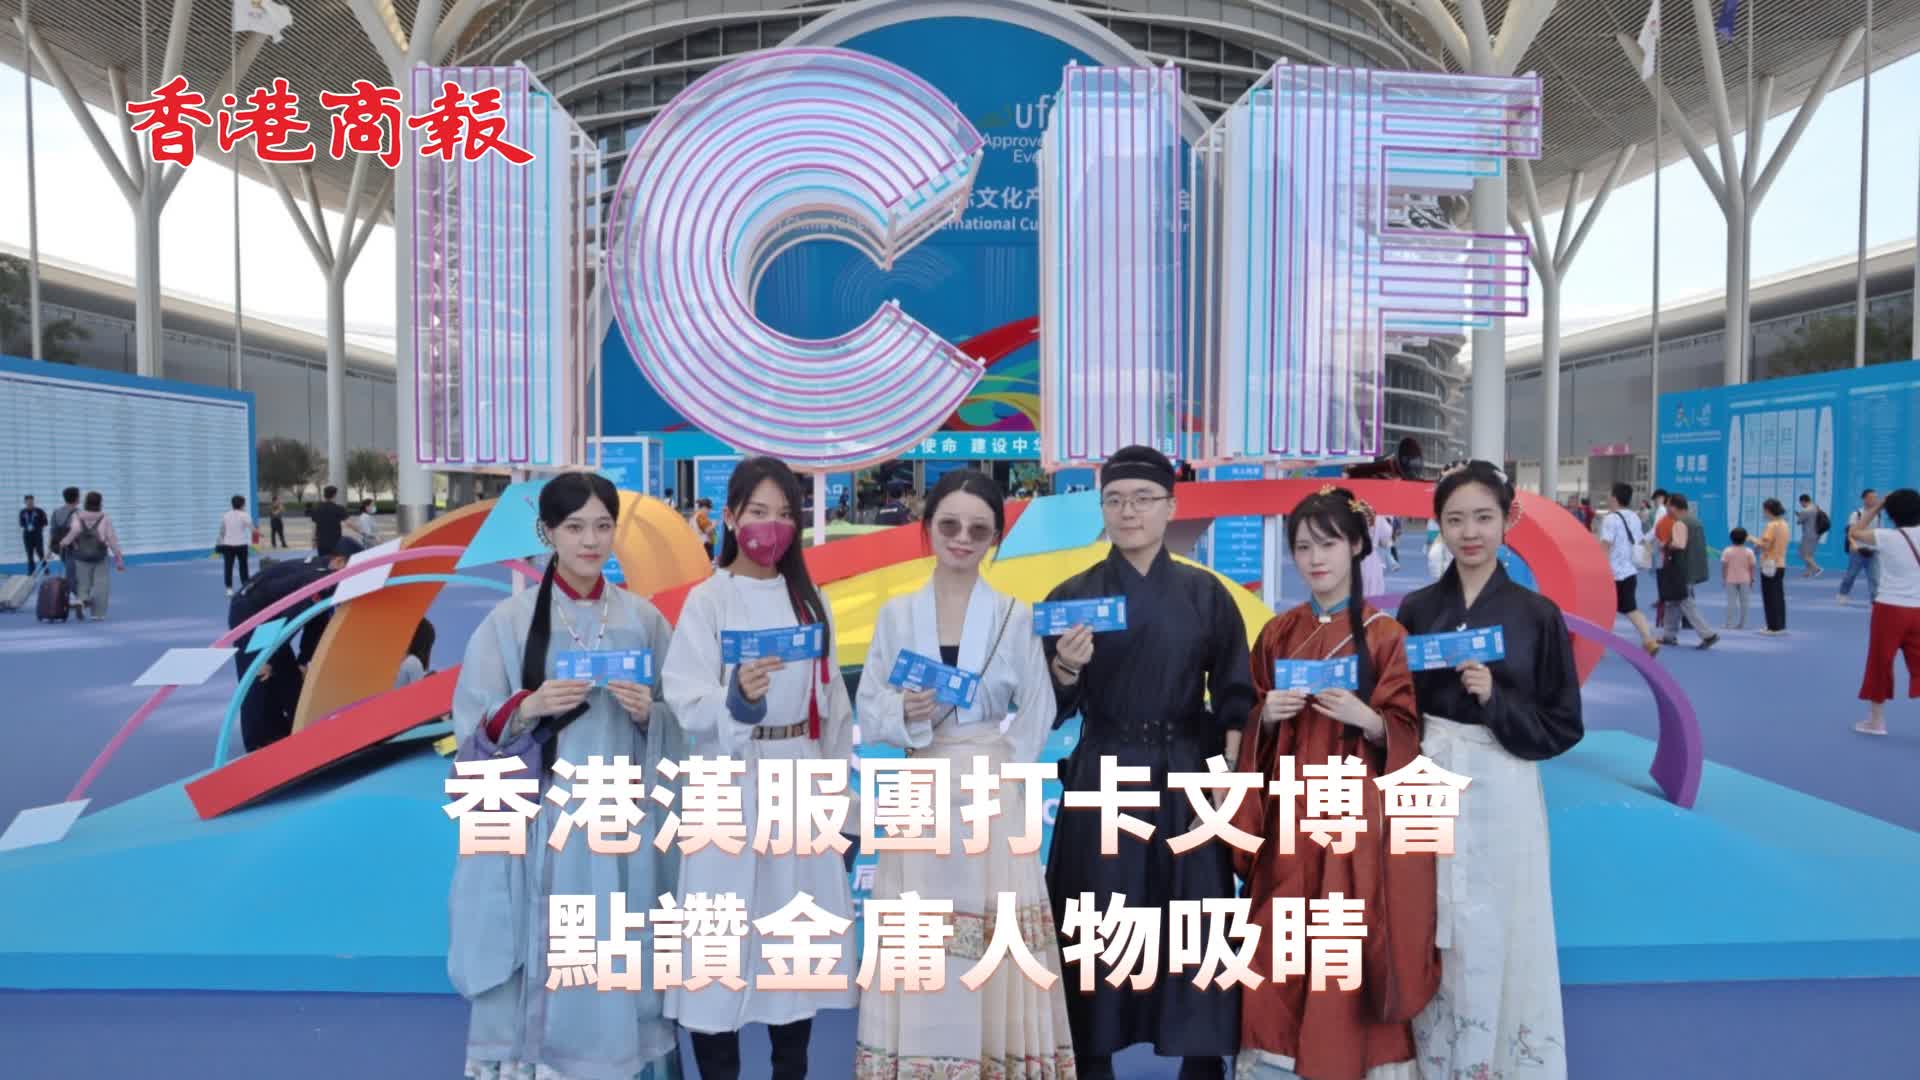 有片 | 【視頻來了】香港漢服團打卡文博會 點讚金庸人物吸睛